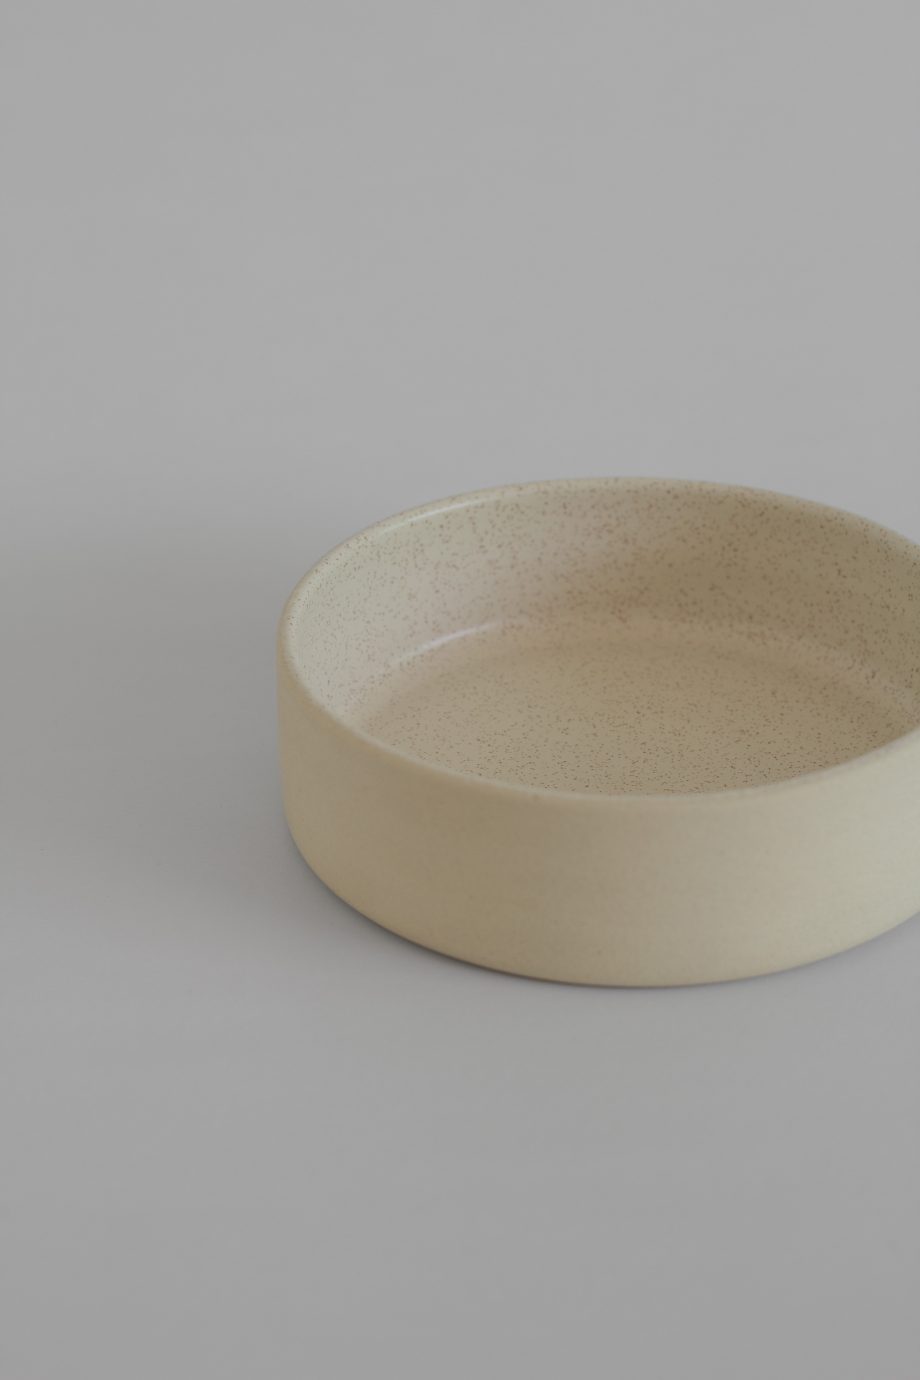 Bowl en céramique de couleur crème avec un intérieur émaillé, fabriquée à la main au Portugal.